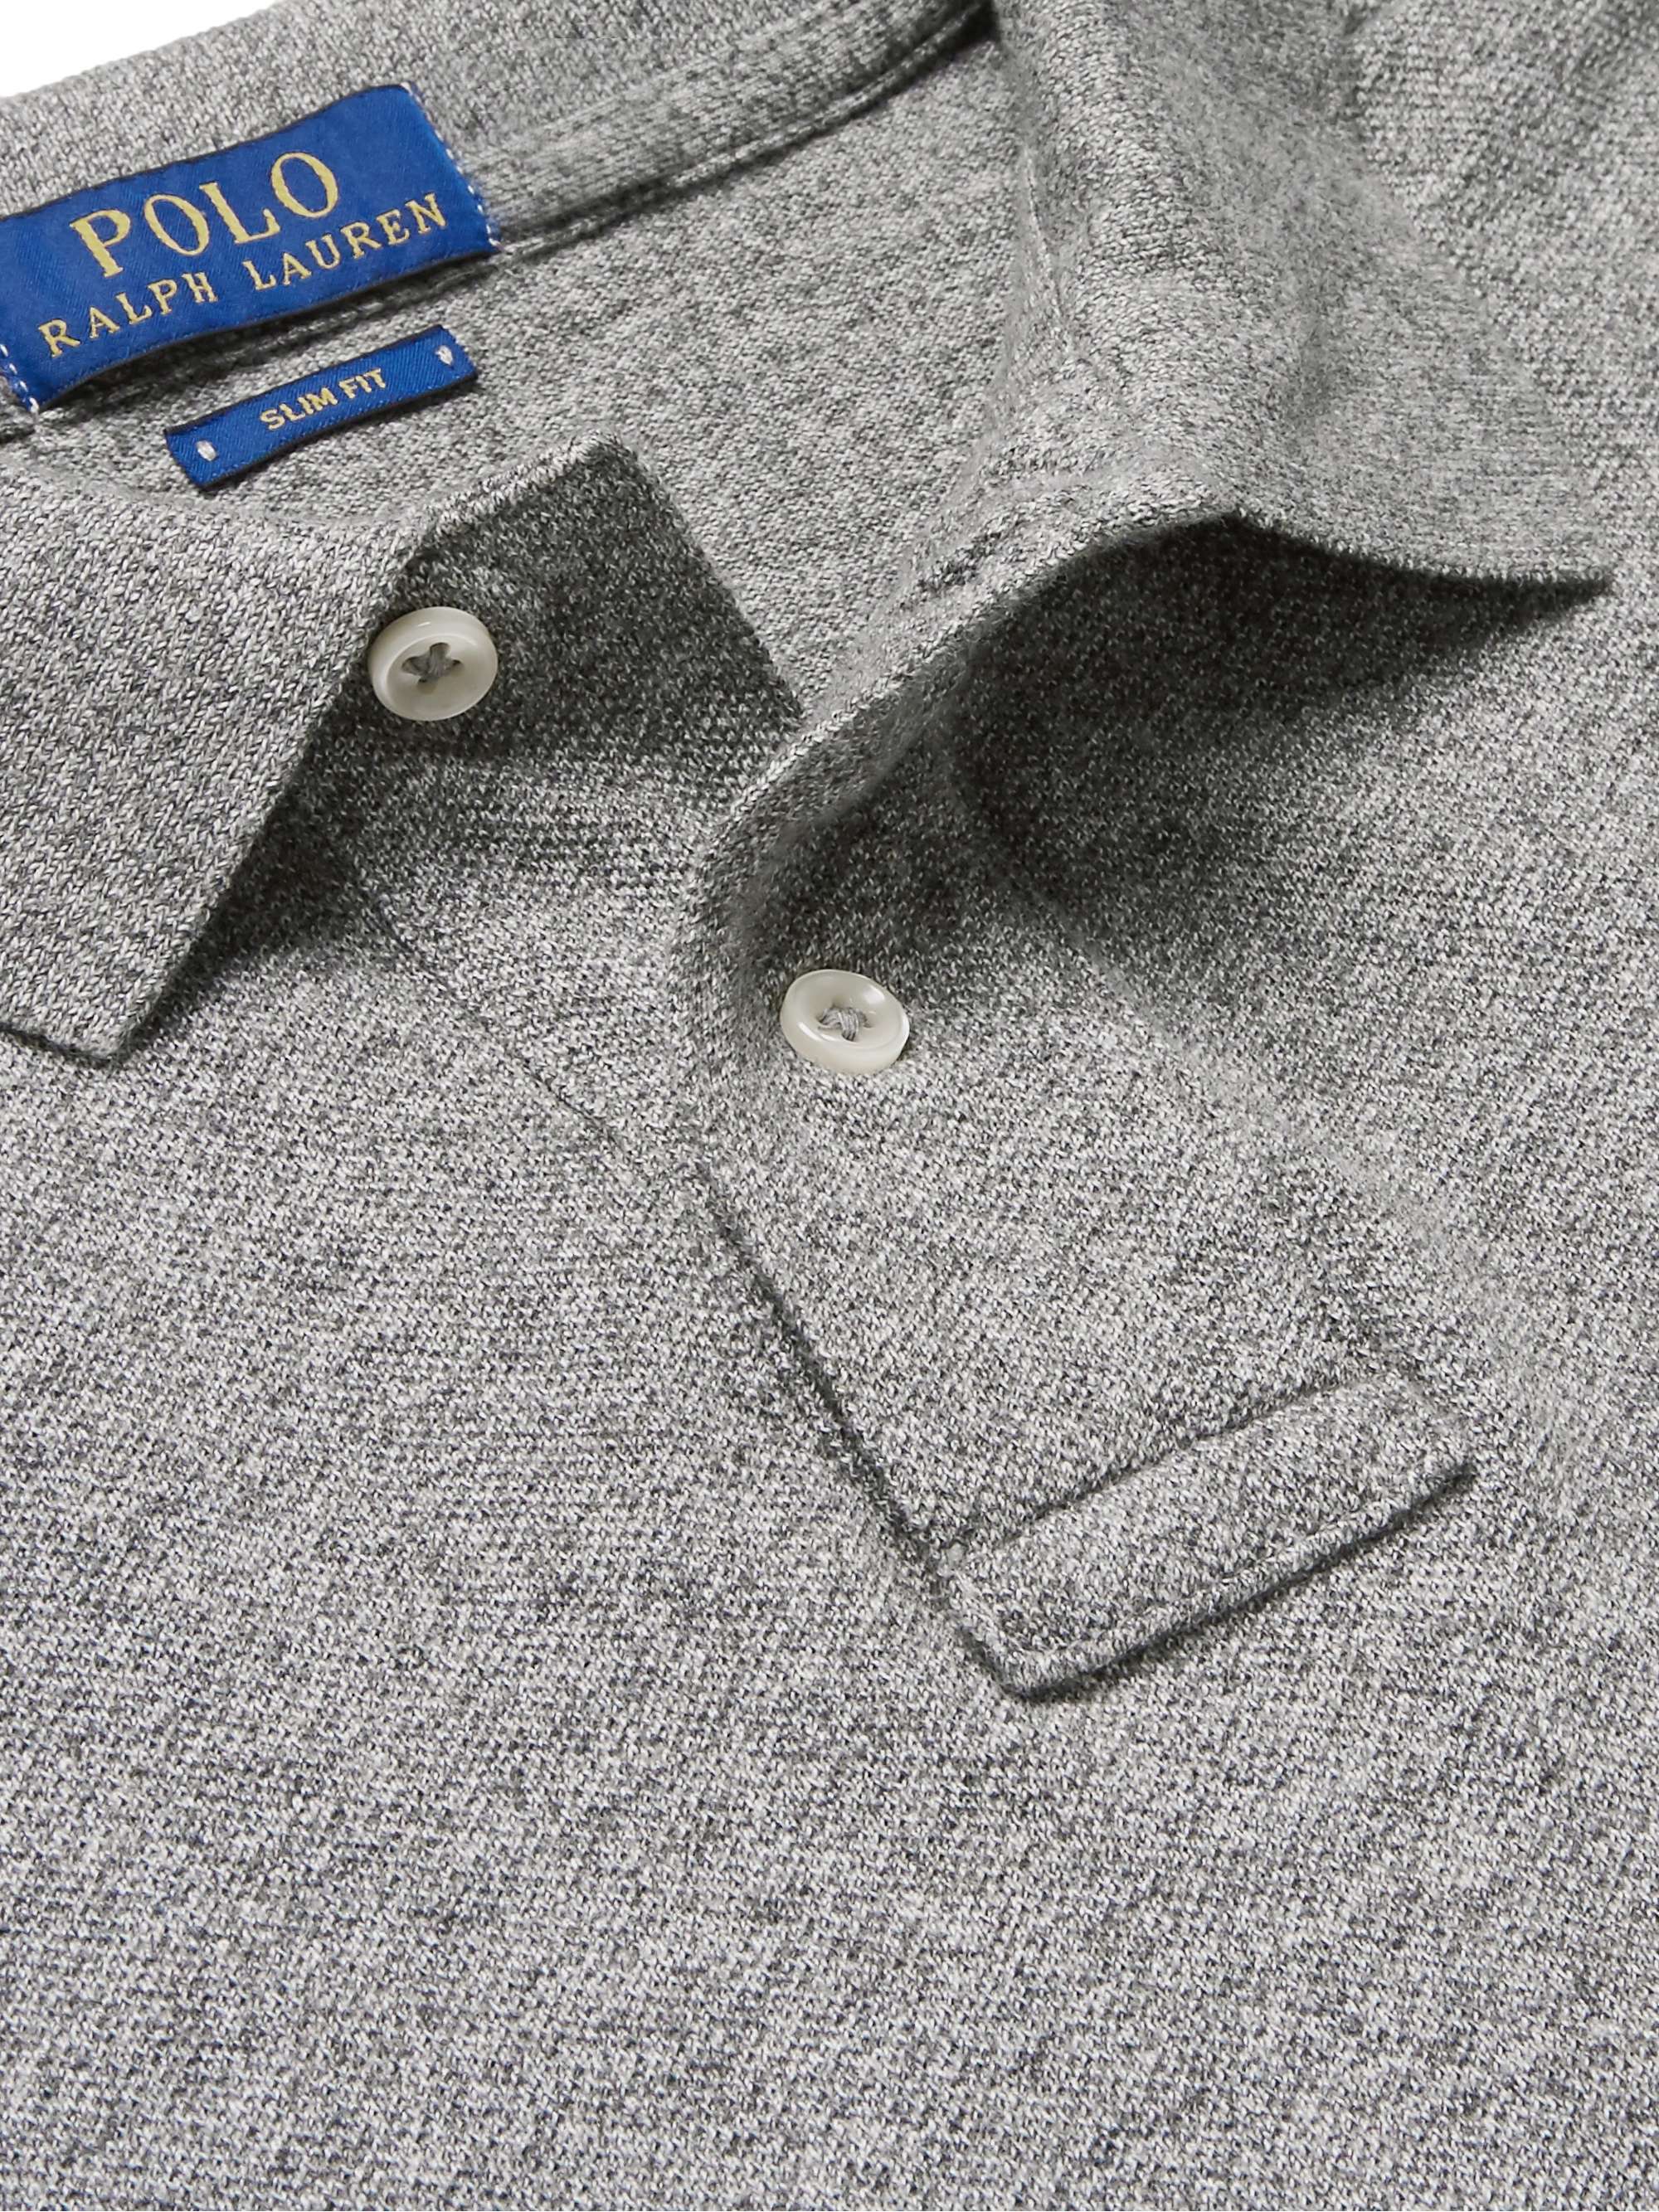 POLO RALPH LAUREN Slim-Fit Mélange Cotton-Piqué Polo Shirt